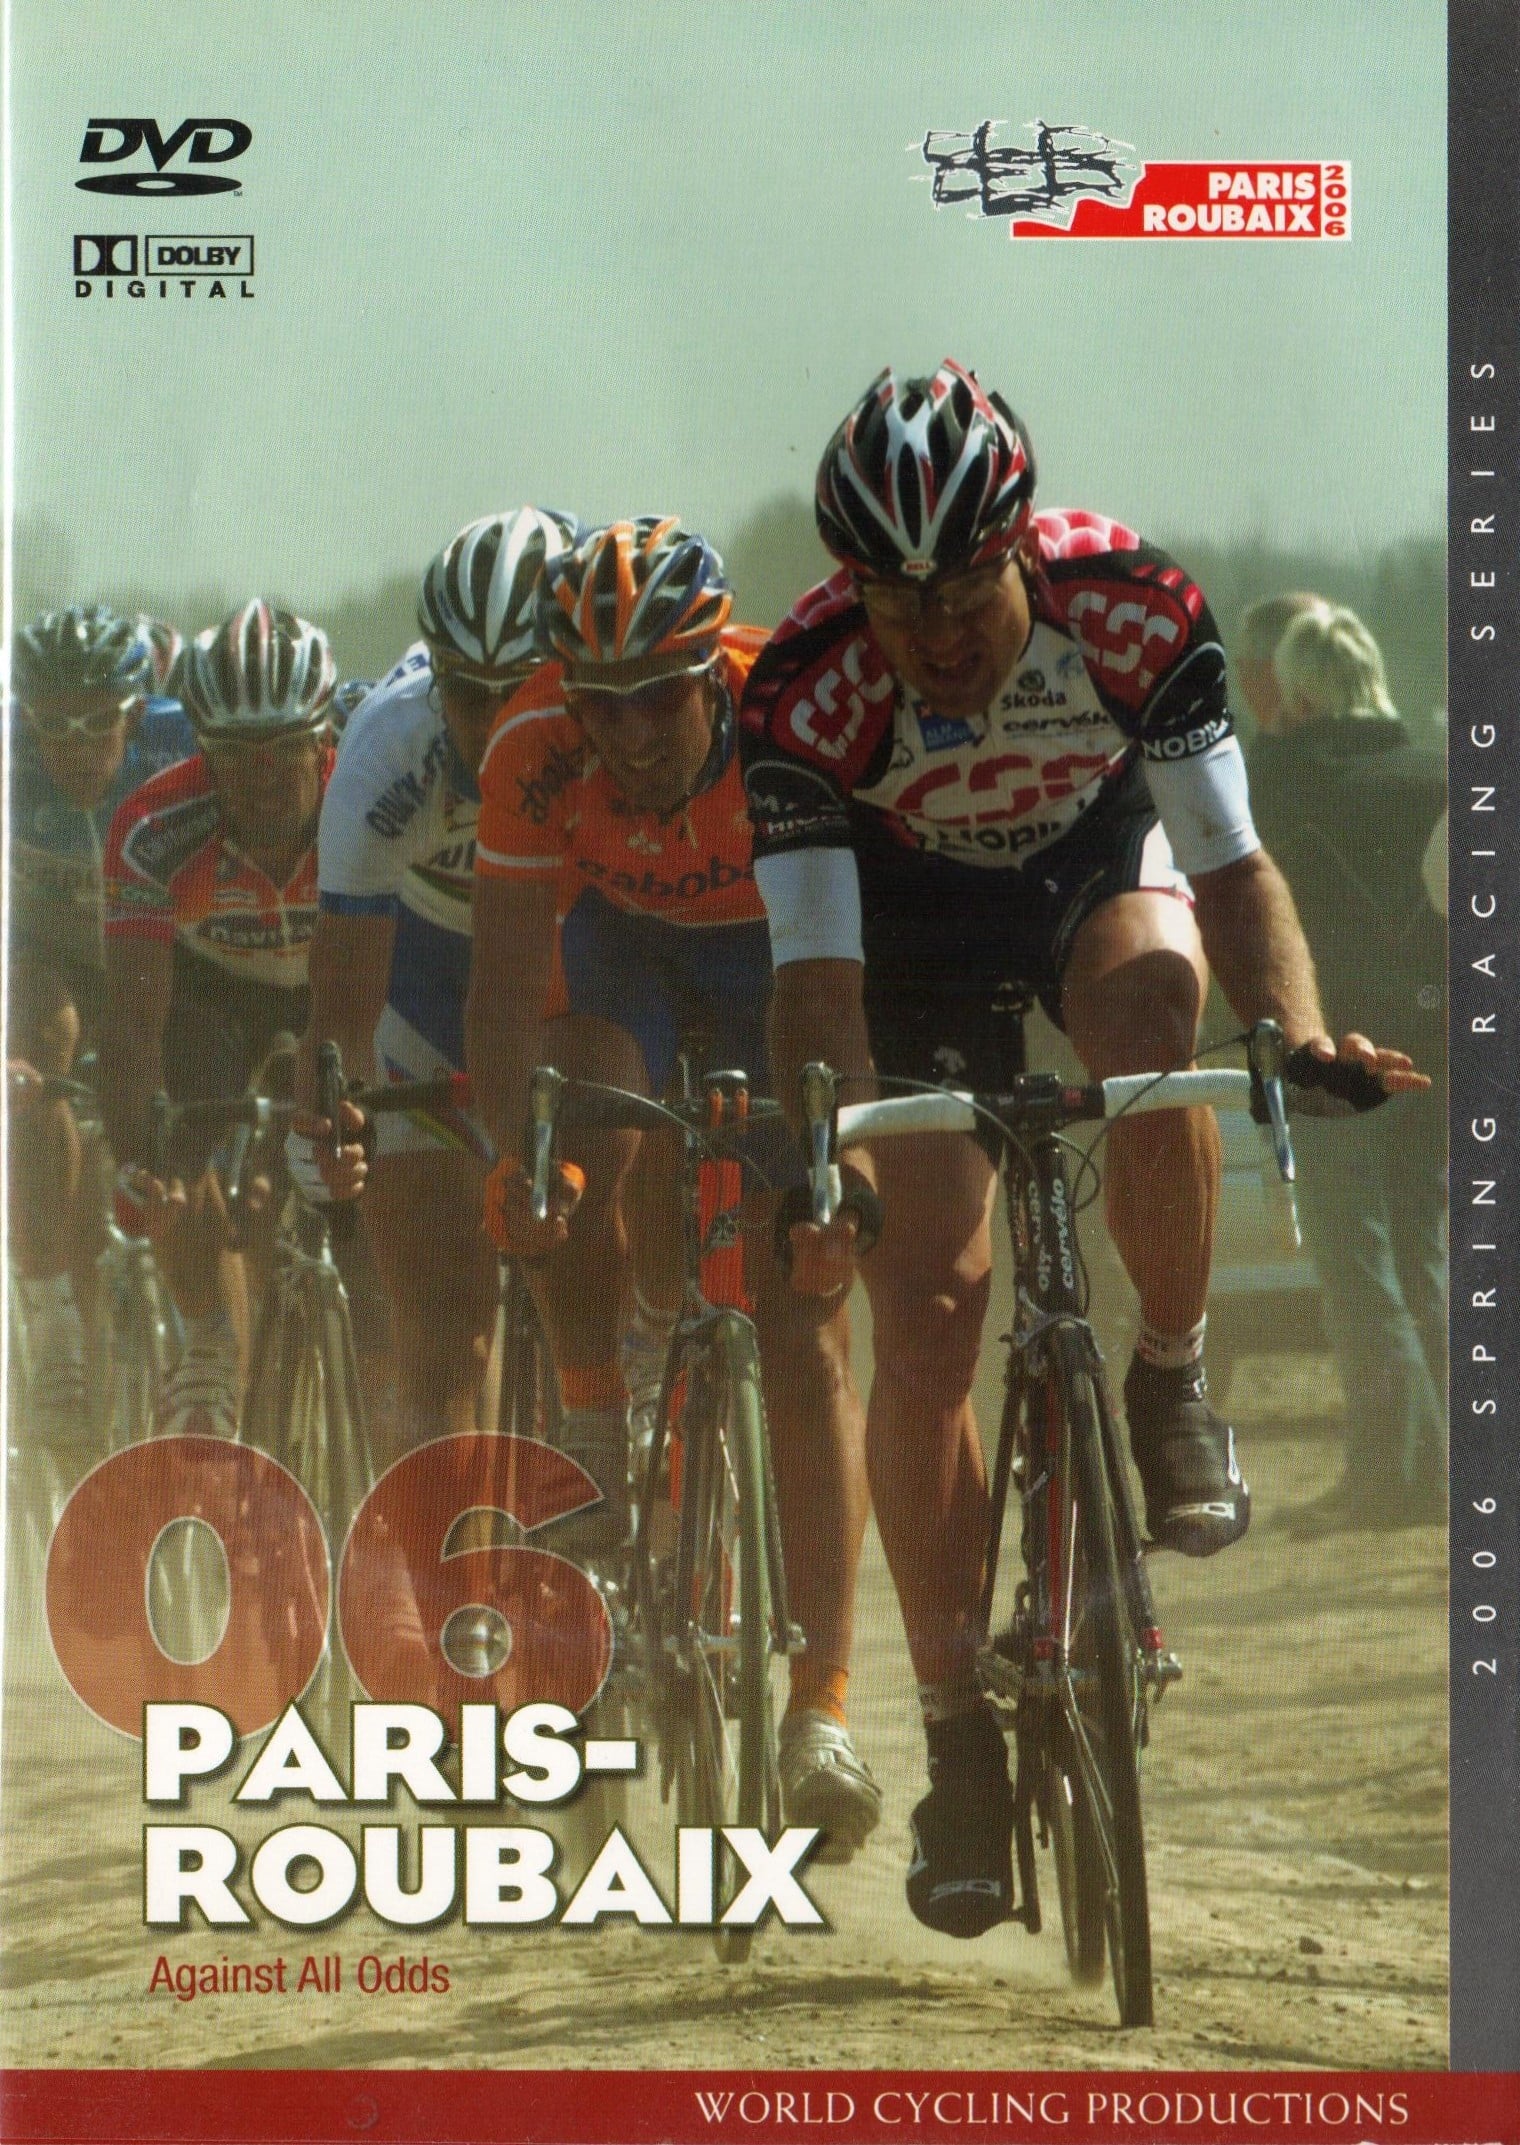 2006 Paris Roubaix